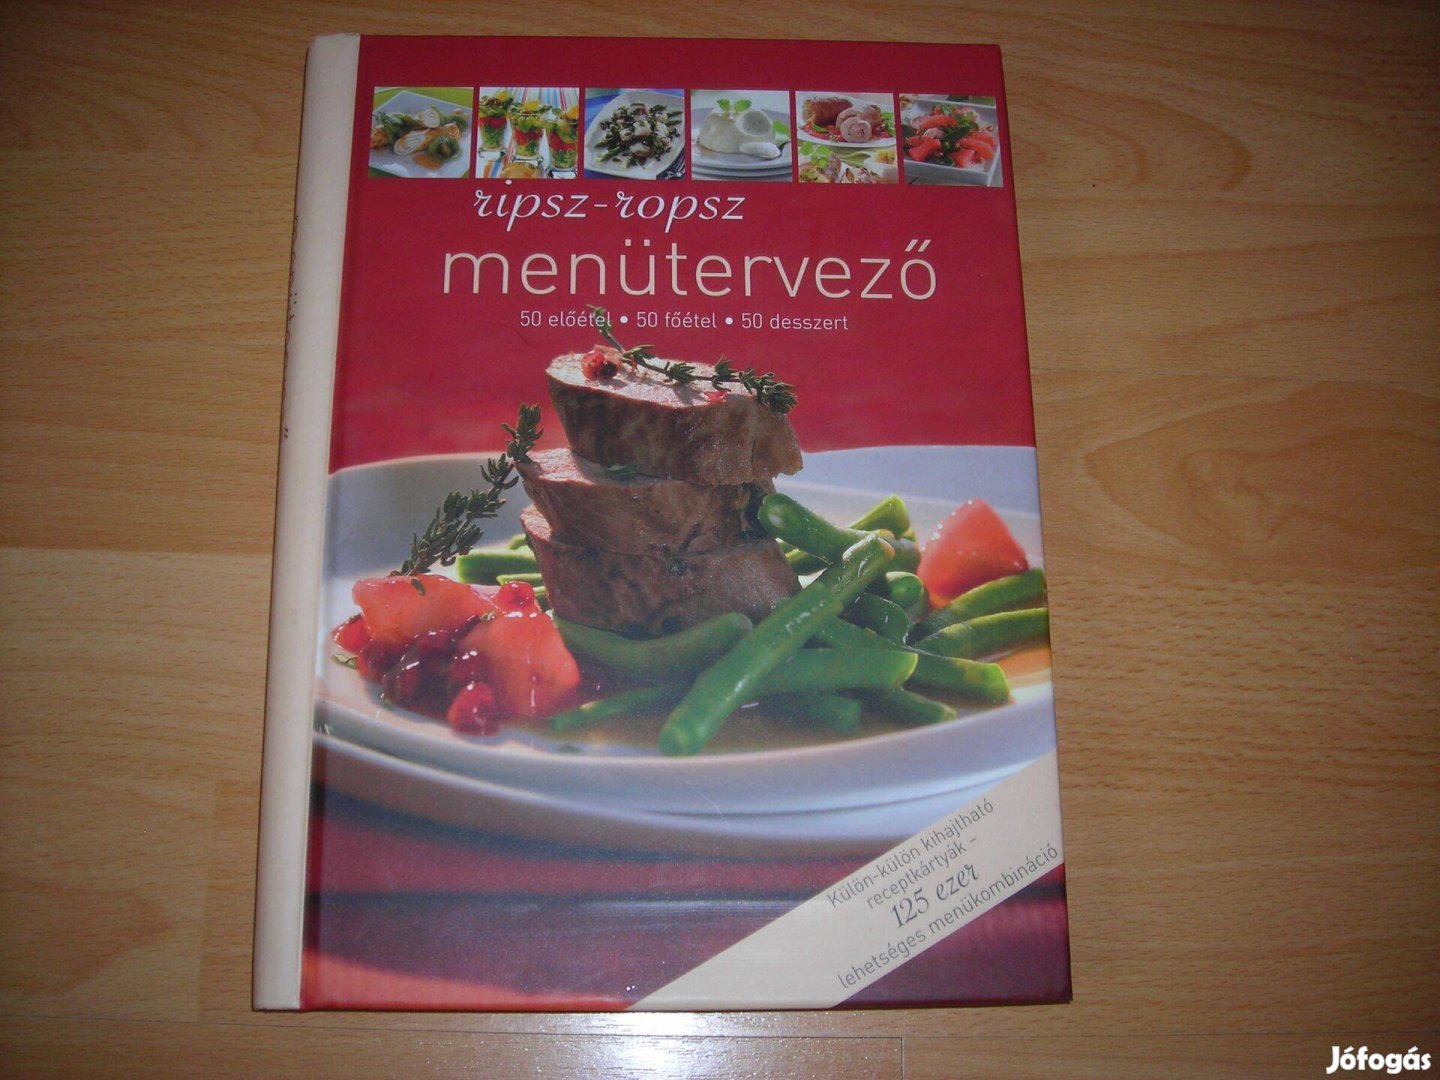 Menütervező szakácskönyv